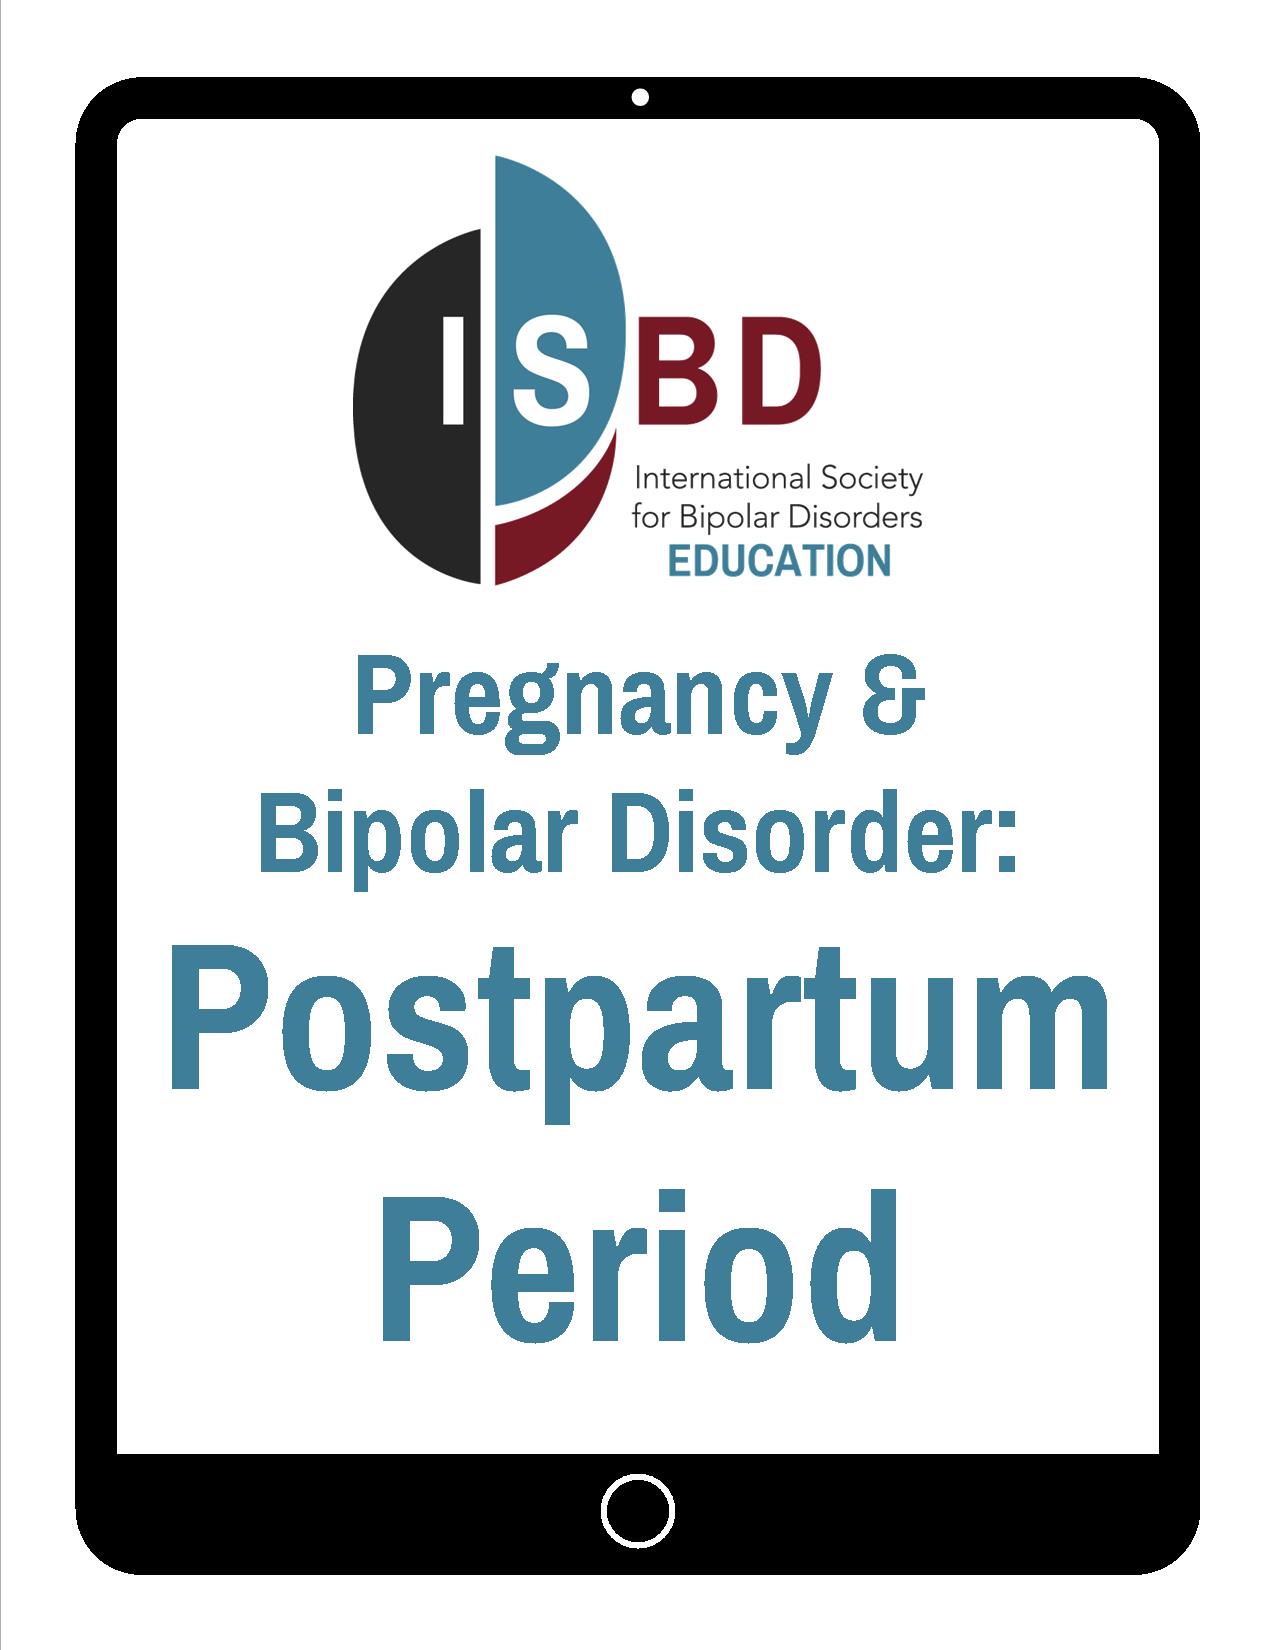 Postpartum Period